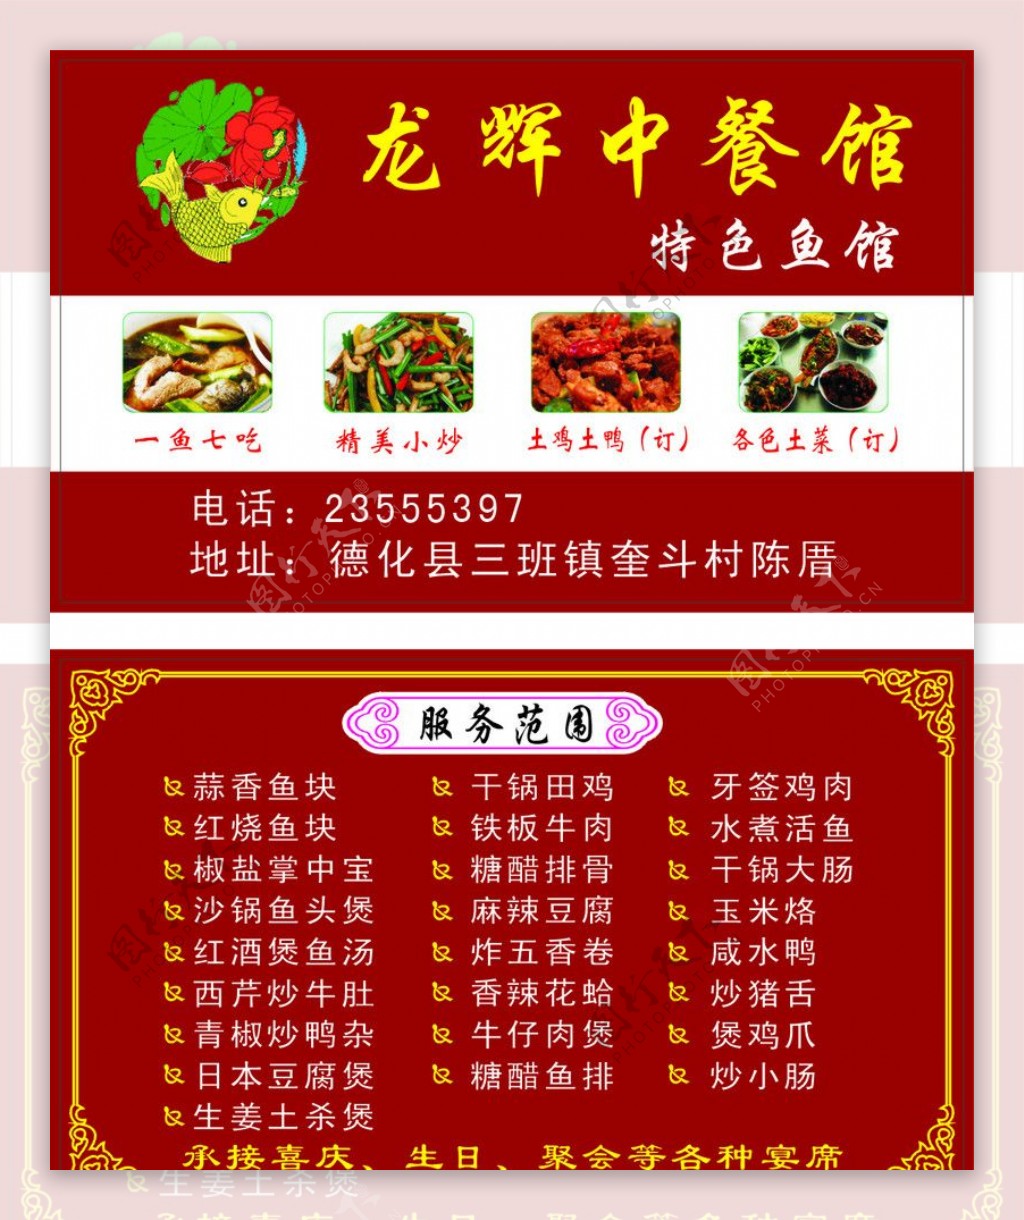 龙辉中餐馆名片图片